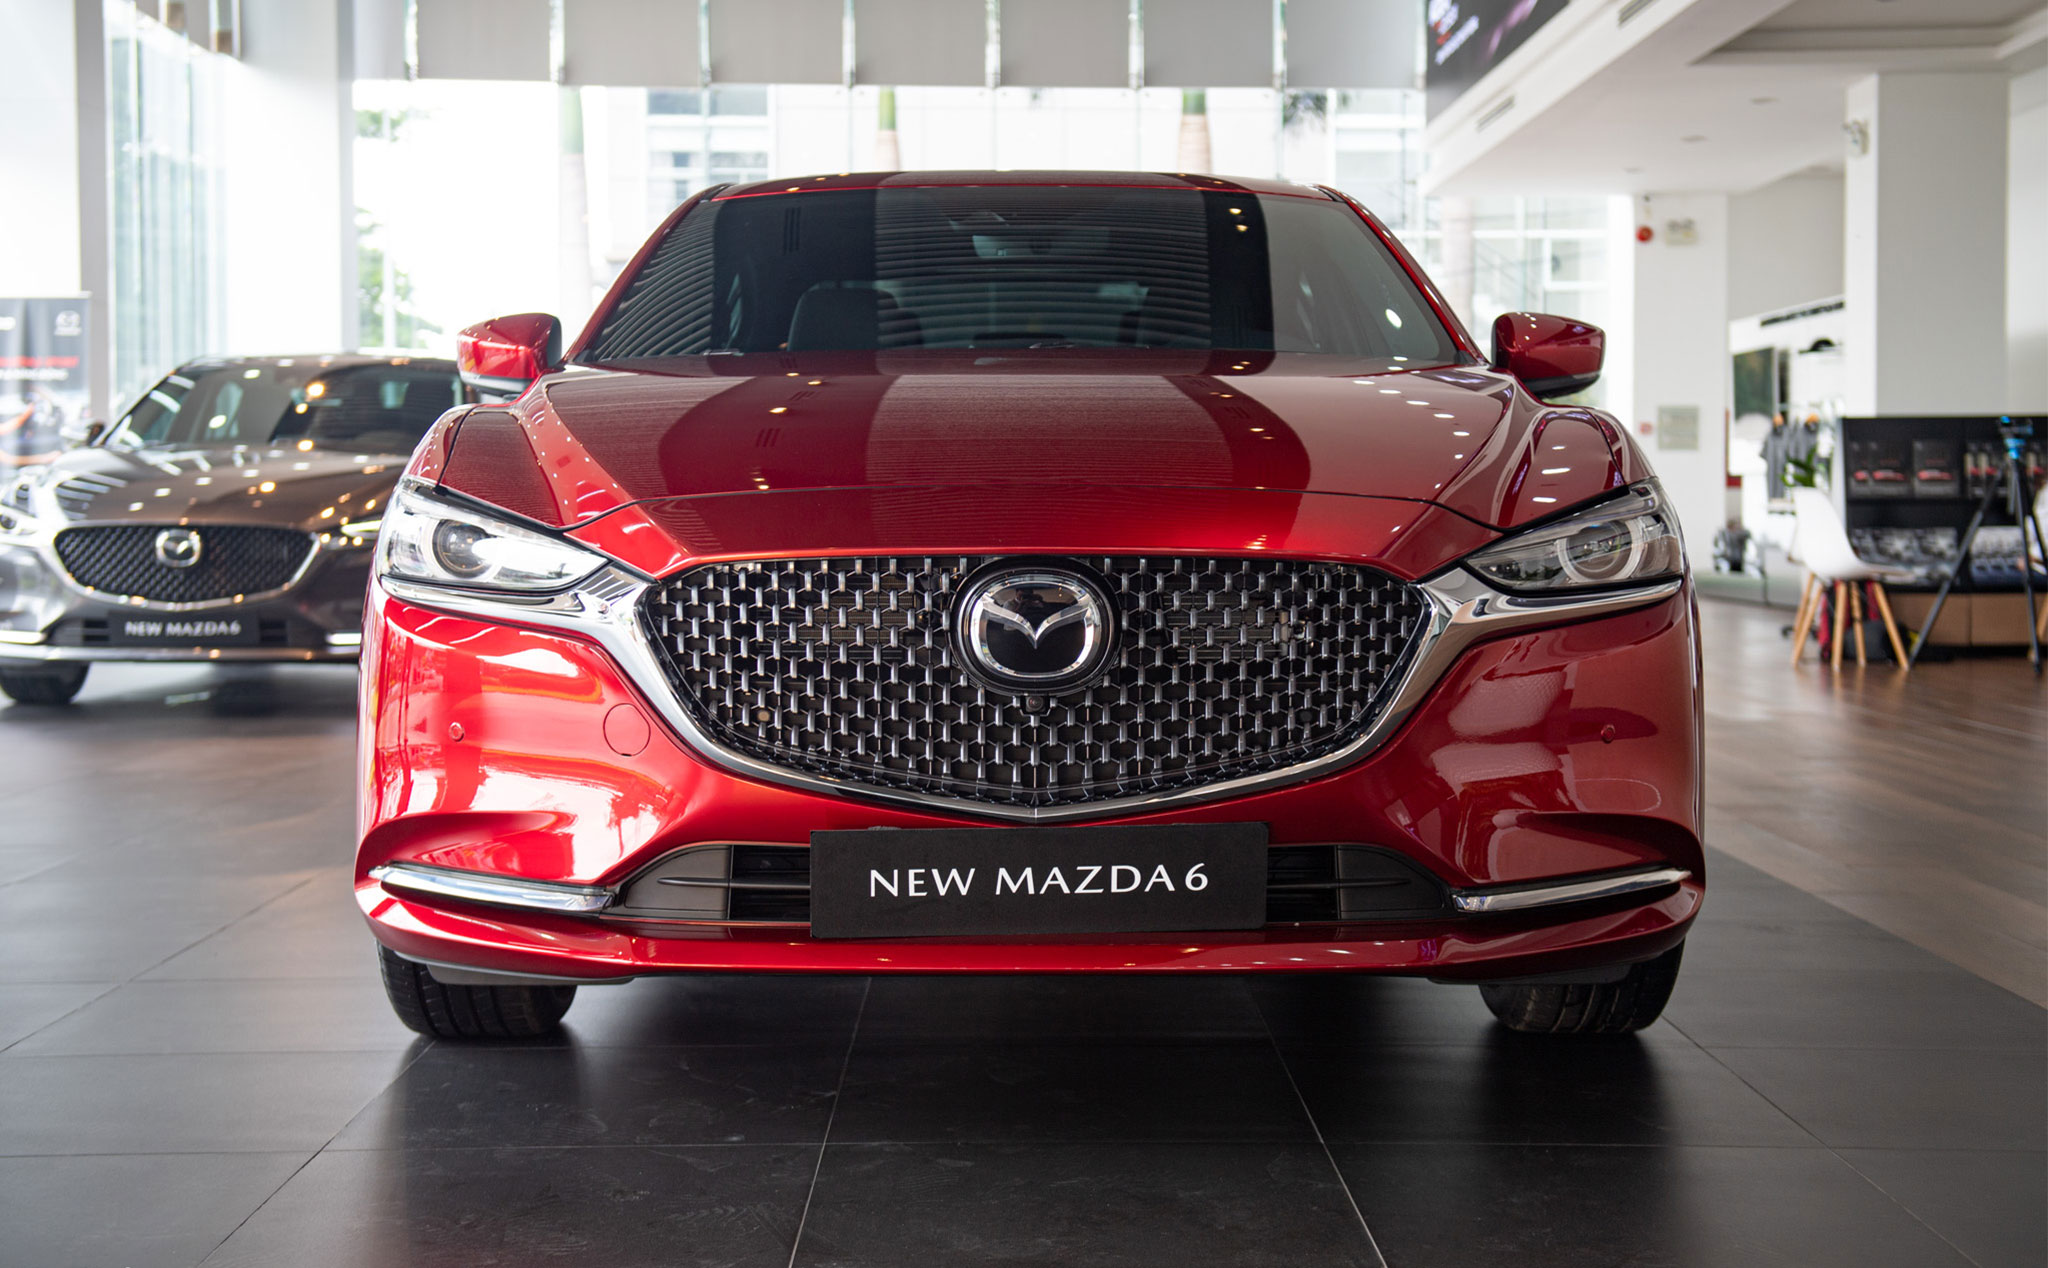 Trên tay New Mazda6 2020, ba phiên bản kèm nhiều trang bị lần đầu có mặt